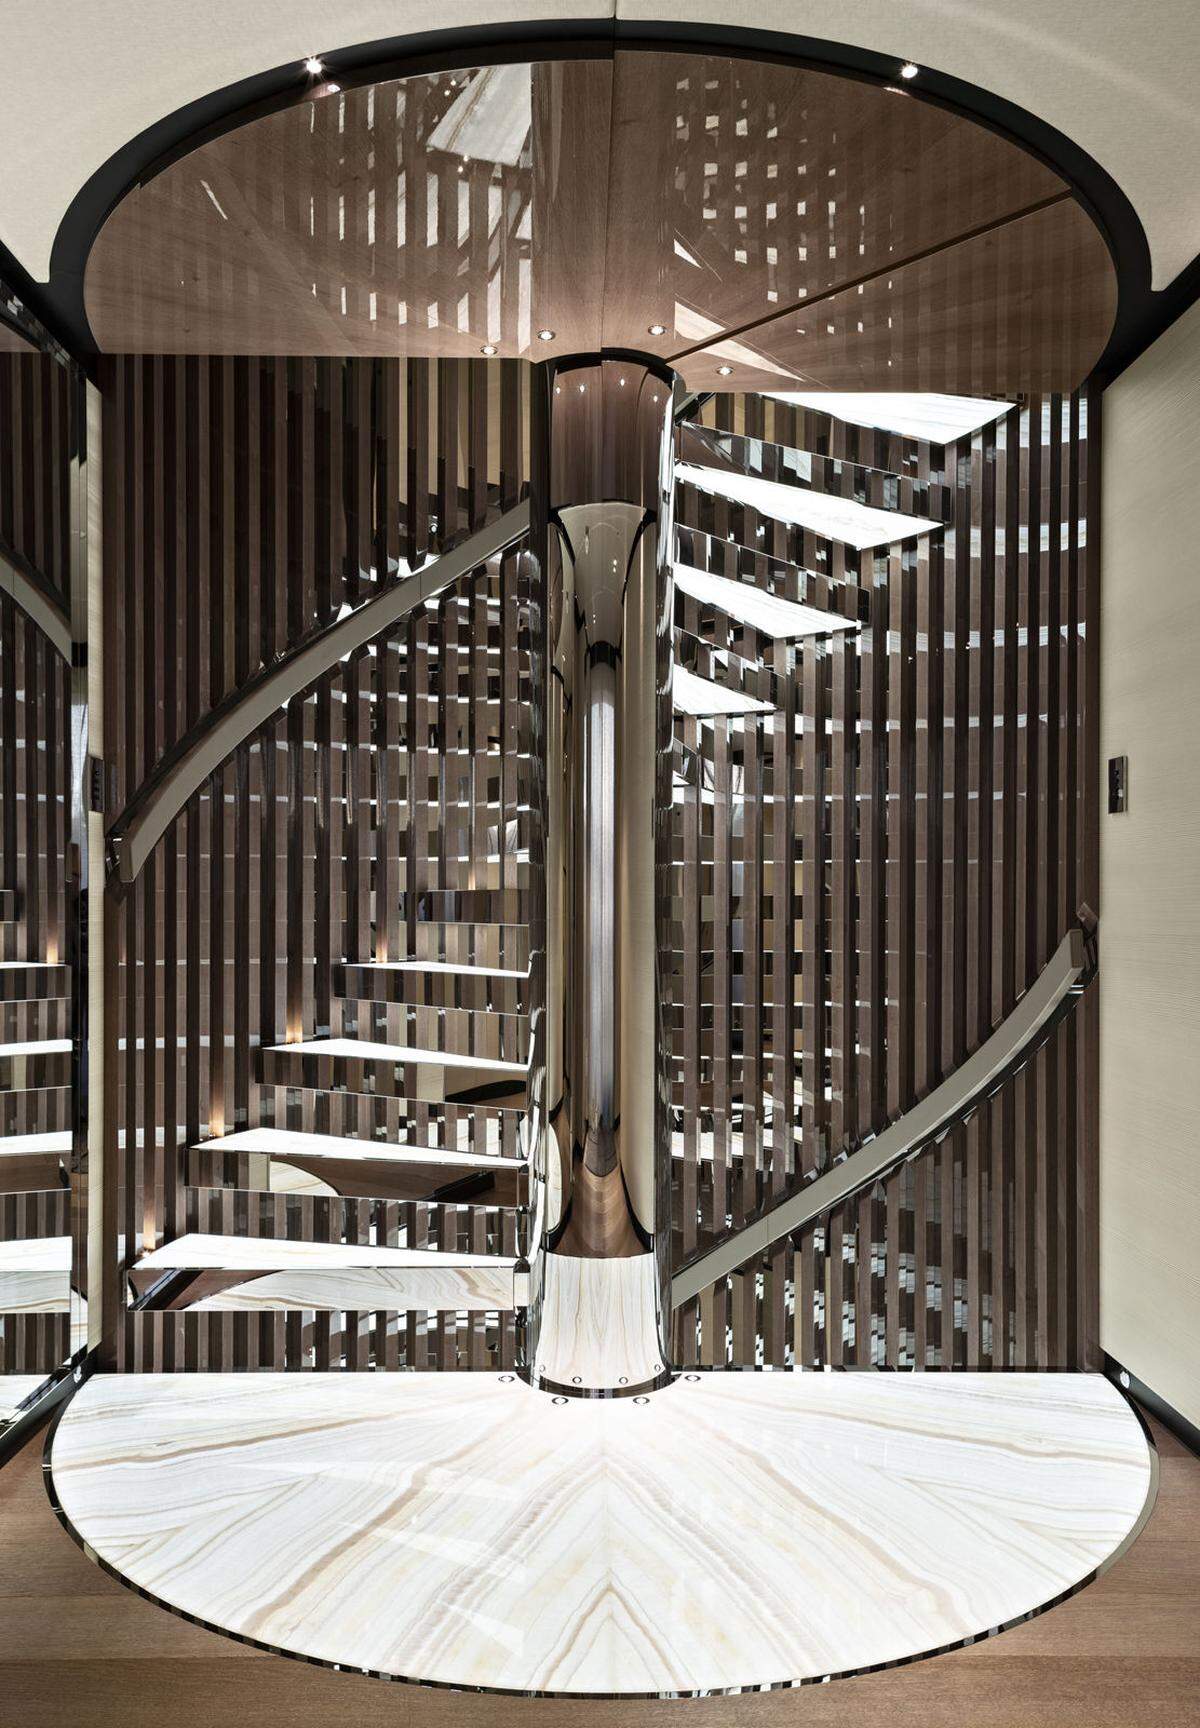 Die Wendeltreppe ist ein besonderer Eyecatcher. Die Illusion von schwebenden Stufen wurde durch Rauchspiegel und durch lackiertes Holz geschaffen.